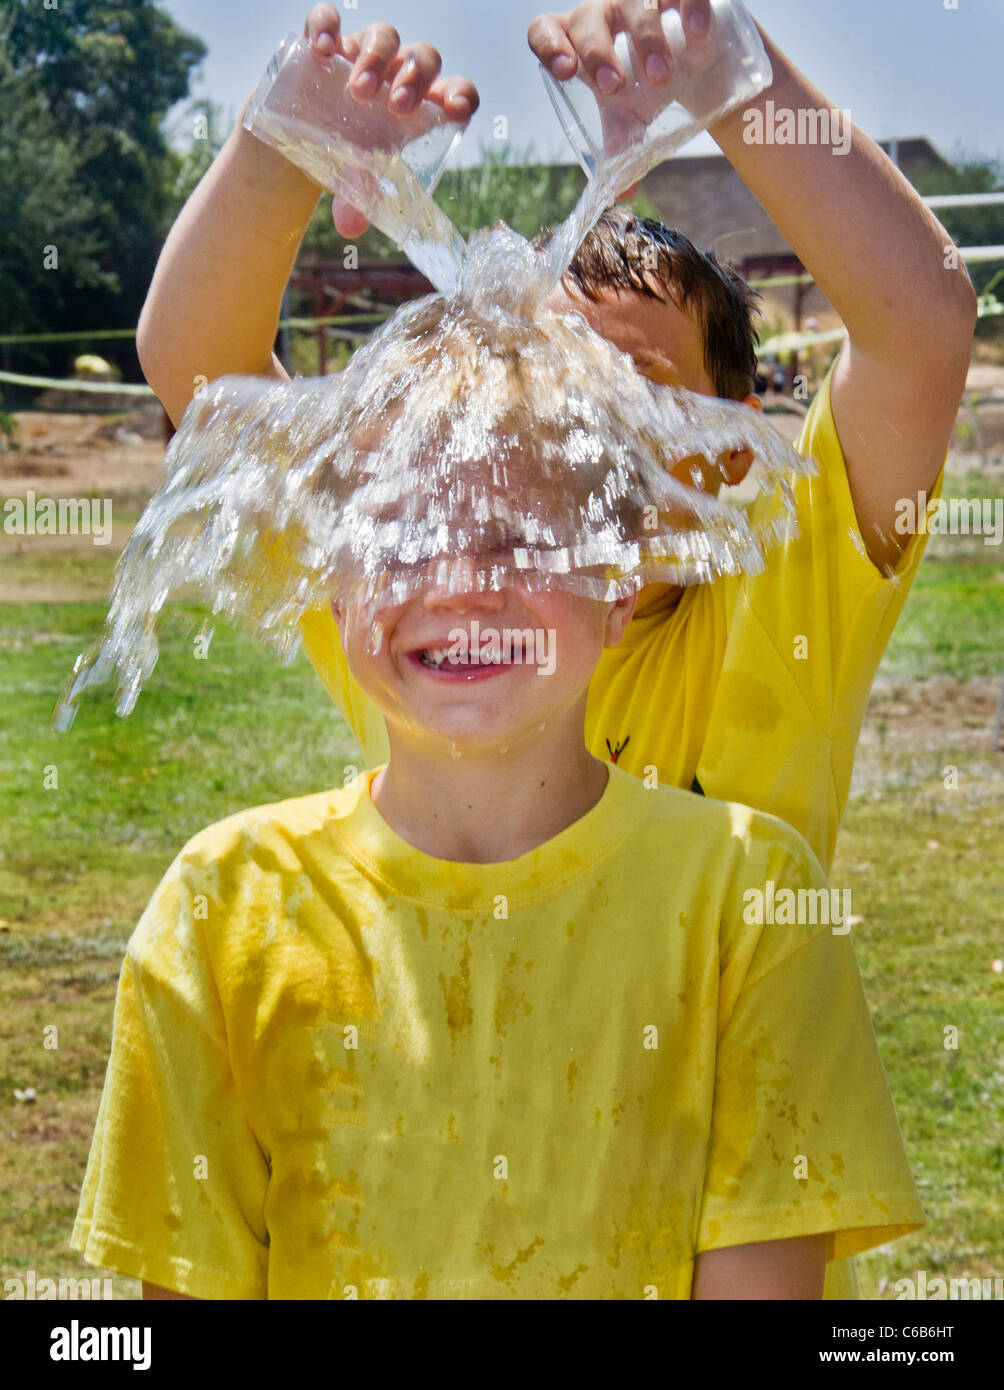 Un ragazzo preteen ha acqua fredda versata su se stesso in un pomeriggio caldo in arancione, CA. Foto Stock